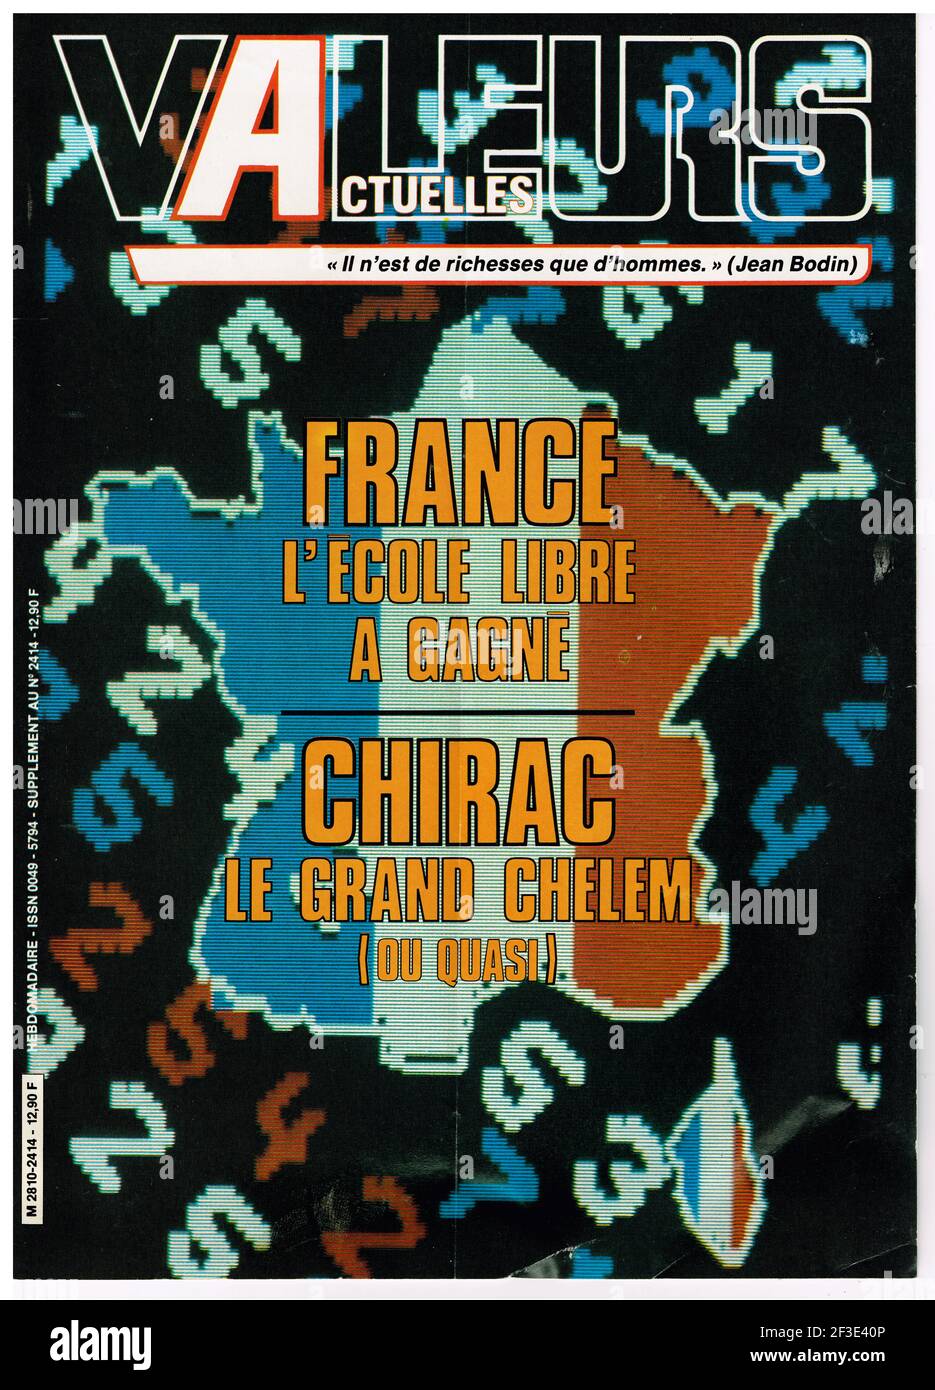 FrontPage du magazine politique et d'information français valeurs actuelles, France, 1983 Banque D'Images